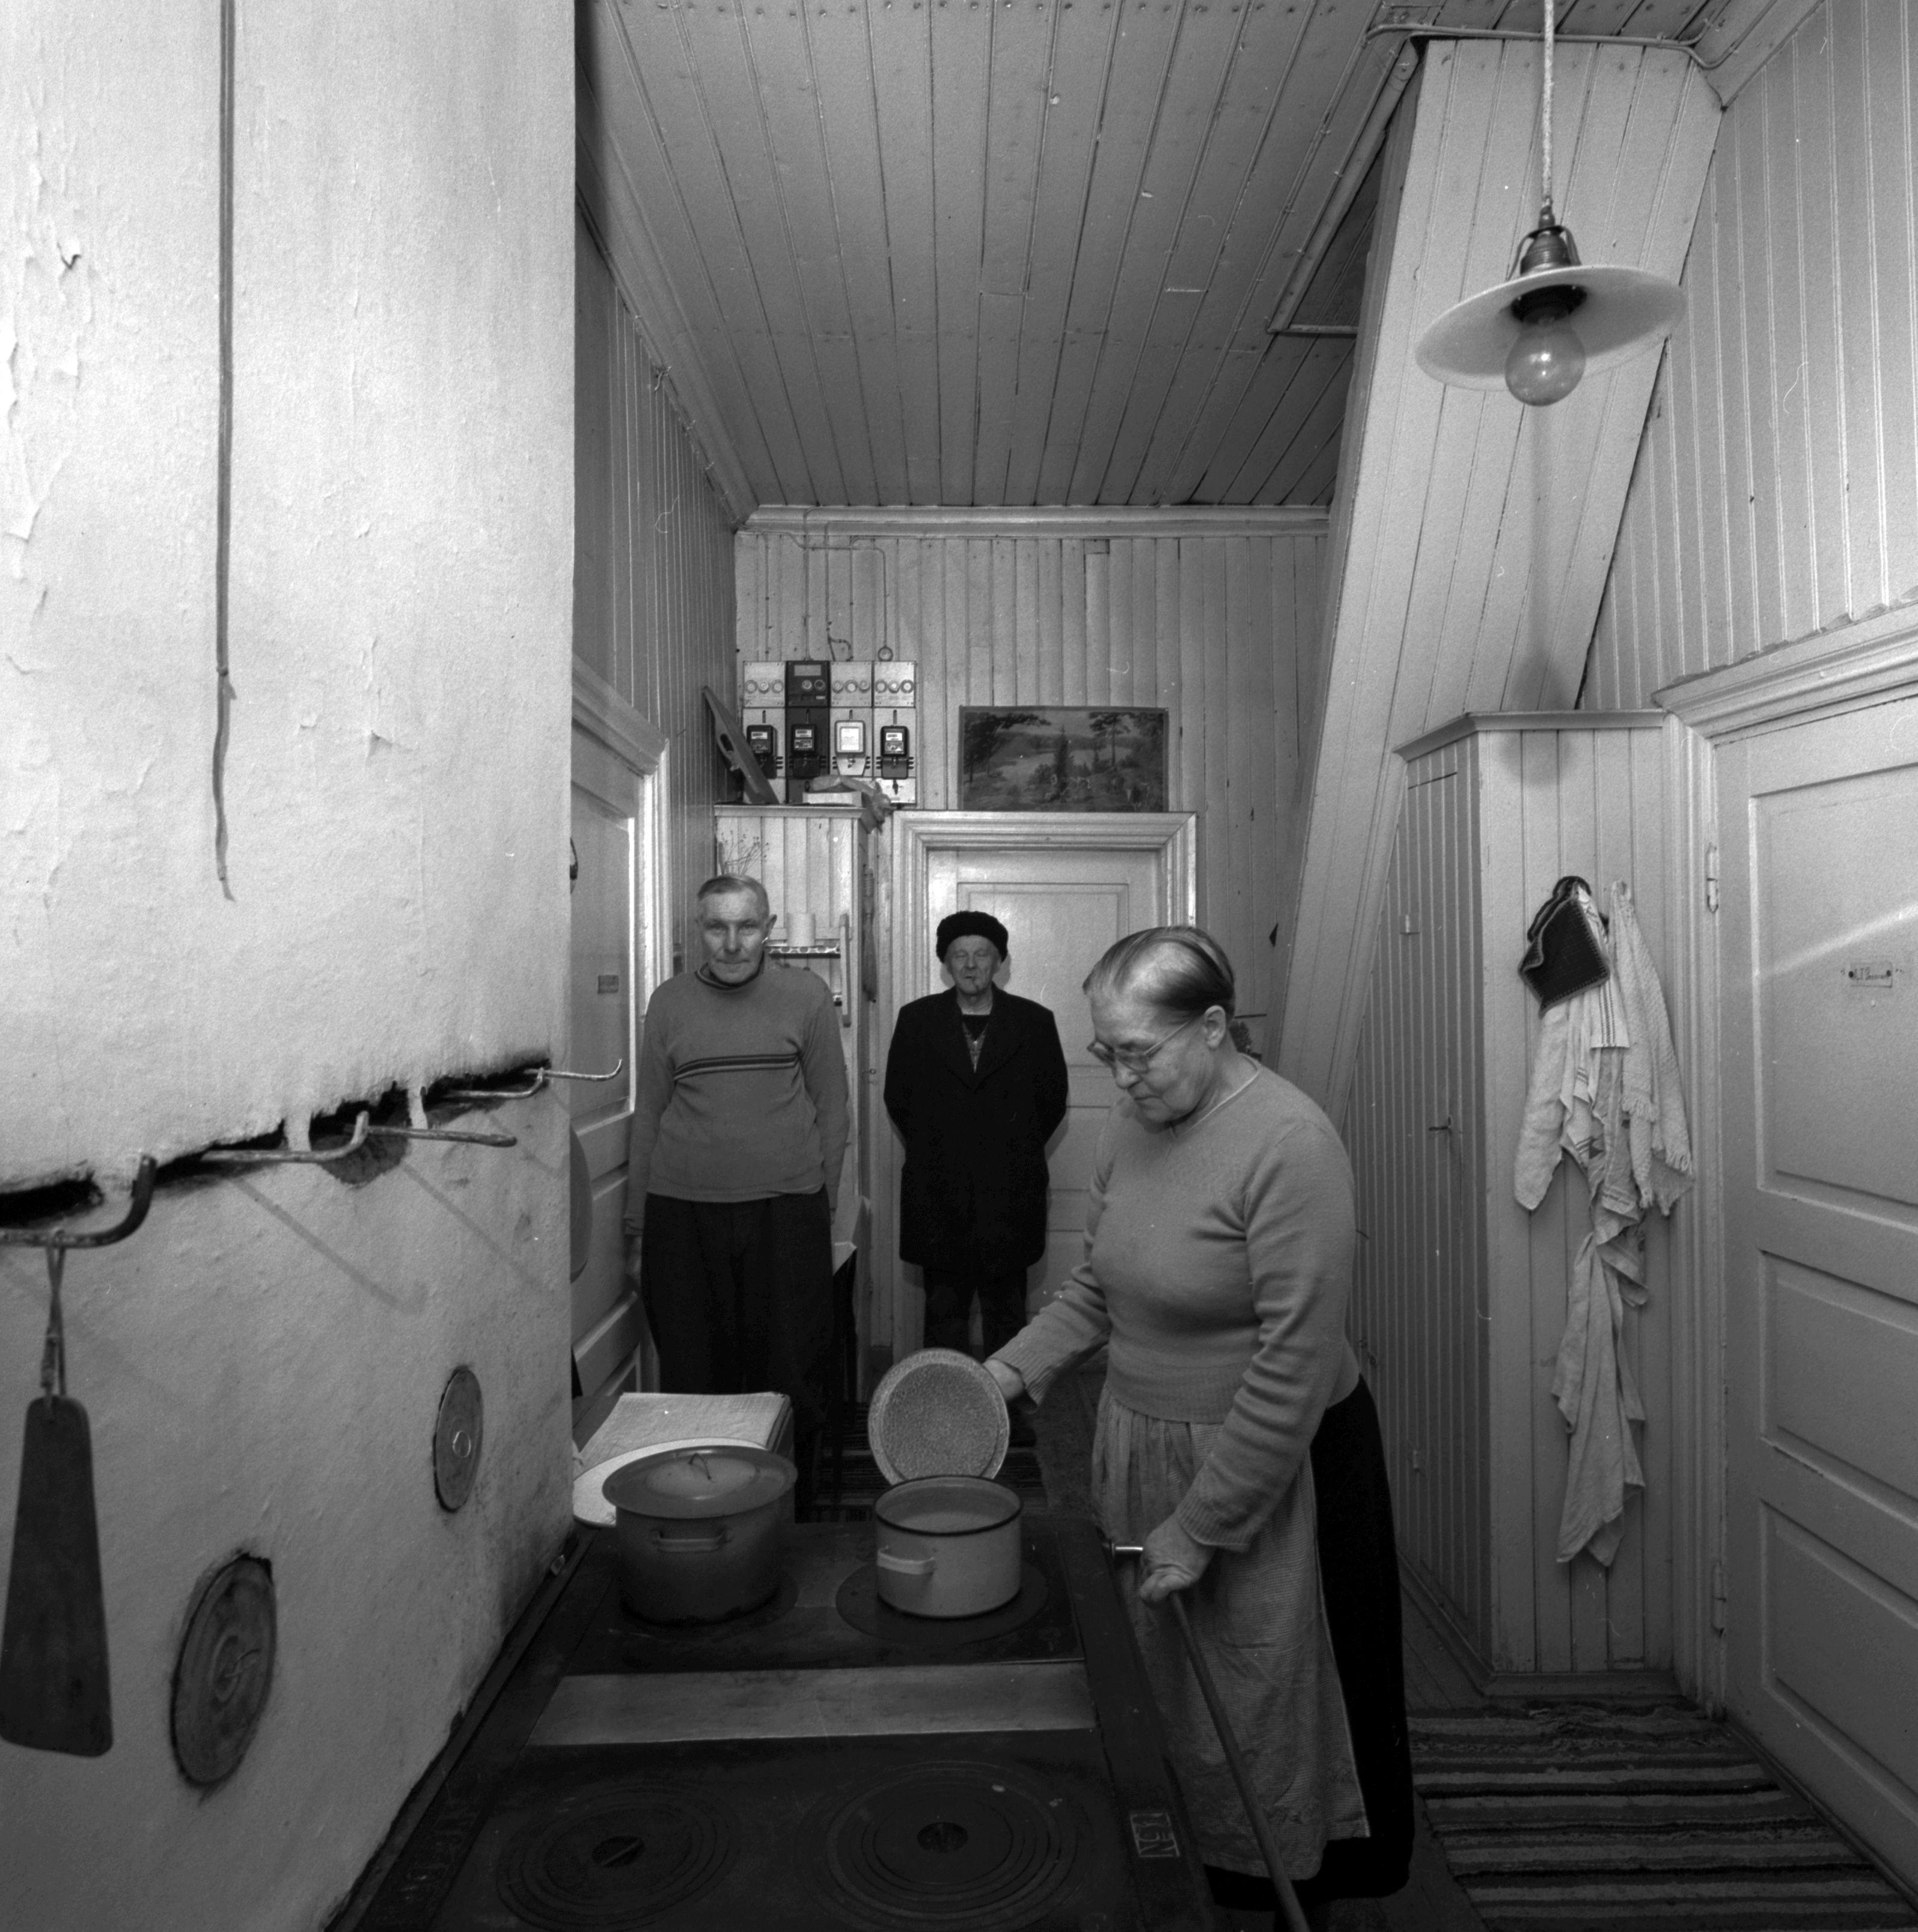 Kolme ihmistä seisoo yhteiskäyttöisessä keittiötilassa. Puuhellan vieressä seisovalla naisella on kädessään hellalla olevan kattilan kansi.